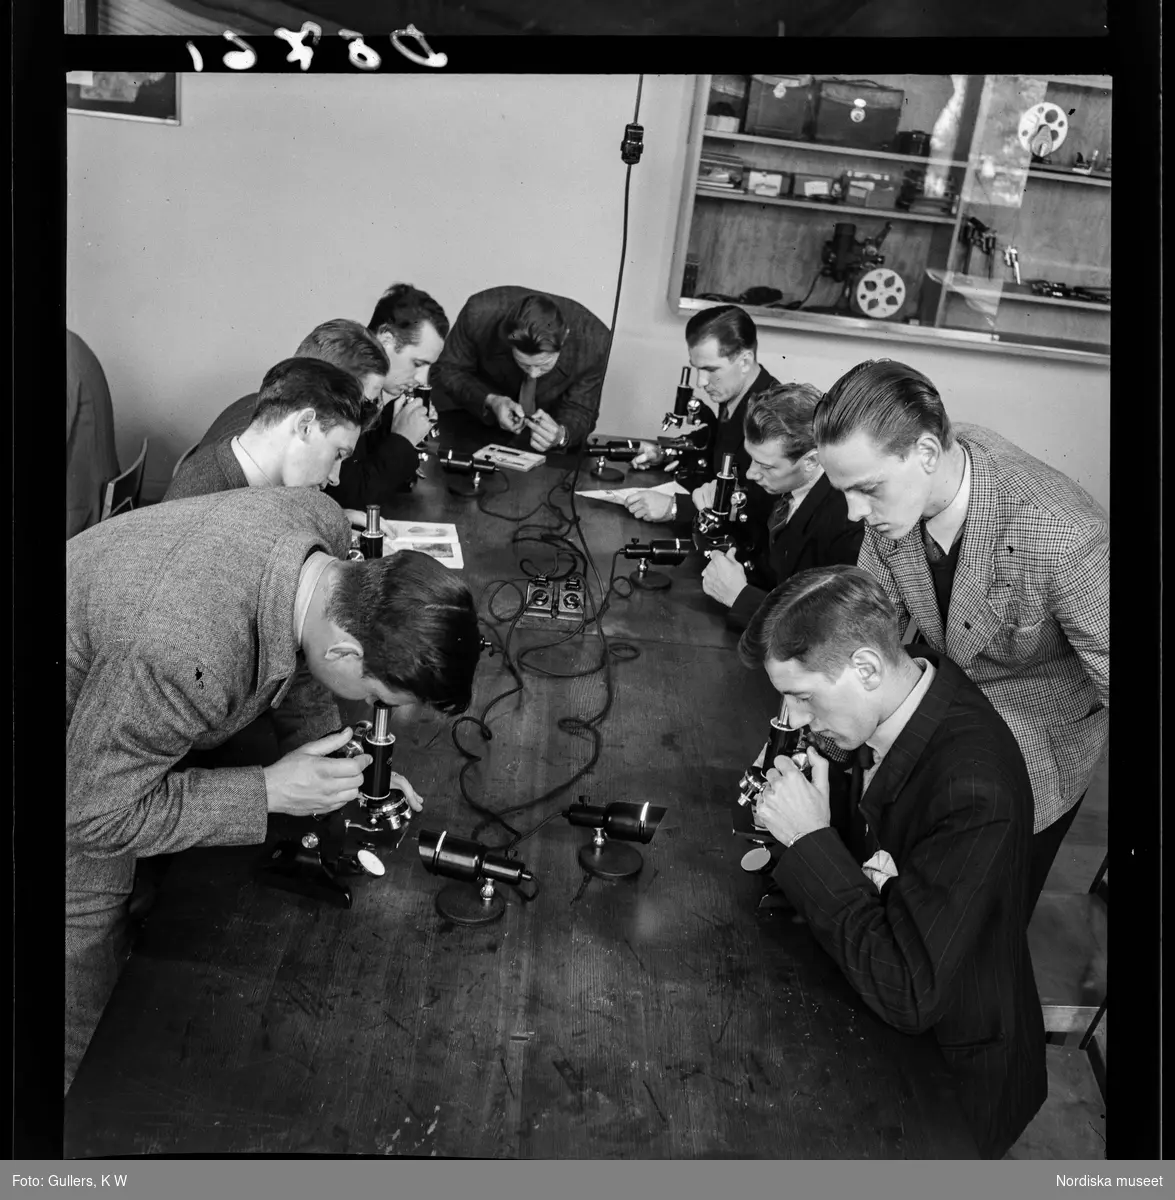 534 Polisskolan. Elever sitter runt ett bord och studerar något i mikroskop.